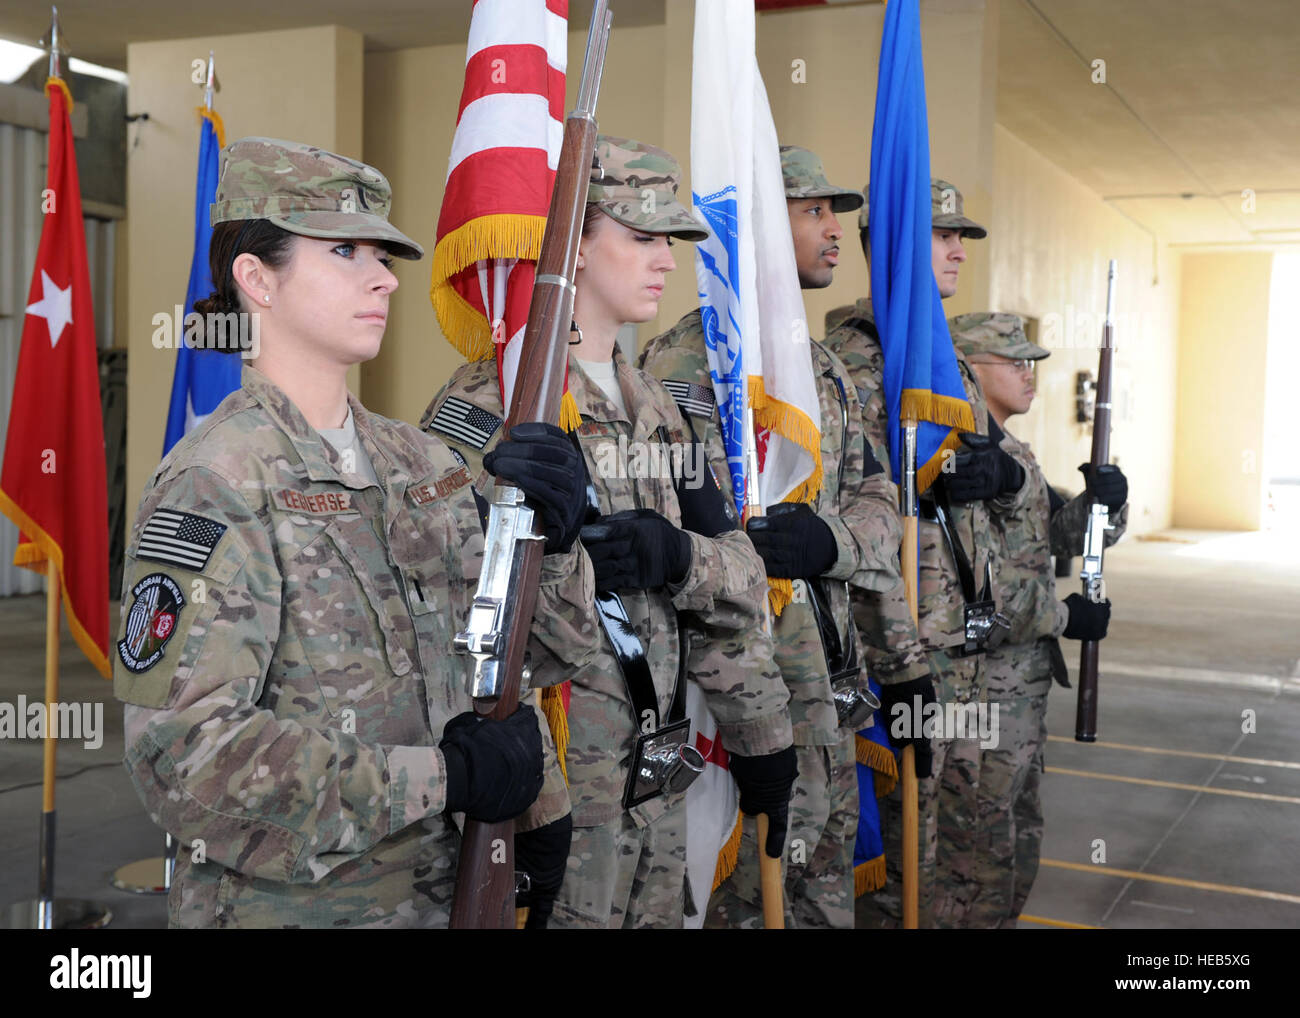 Los aviadores de la Fuerza Aérea de EE.UU. asignados a la 455a la guardia de honor del ala expedicionaria aérea equipo preparan para publicar los colores durante la 455a Grupo Médico expedicionario ceremonia de cambio de mando de Marzo 13, 2015 en el Campo Aéreo Bagram, Afganistán. La celebración de un año de gira, el Coronel de la Fuerza Aérea de EE.UU. Gary Walker, 455 EMDG comandante saliente, dejó el mando del grupo de la Fuerza Aérea de Estados Unidos Coronel Gianna Zeh, desplegados desde la base de la Fuerza Aérea de Eglin, Florida, el sargento. Whitney Amstutz/liberado) Foto de stock